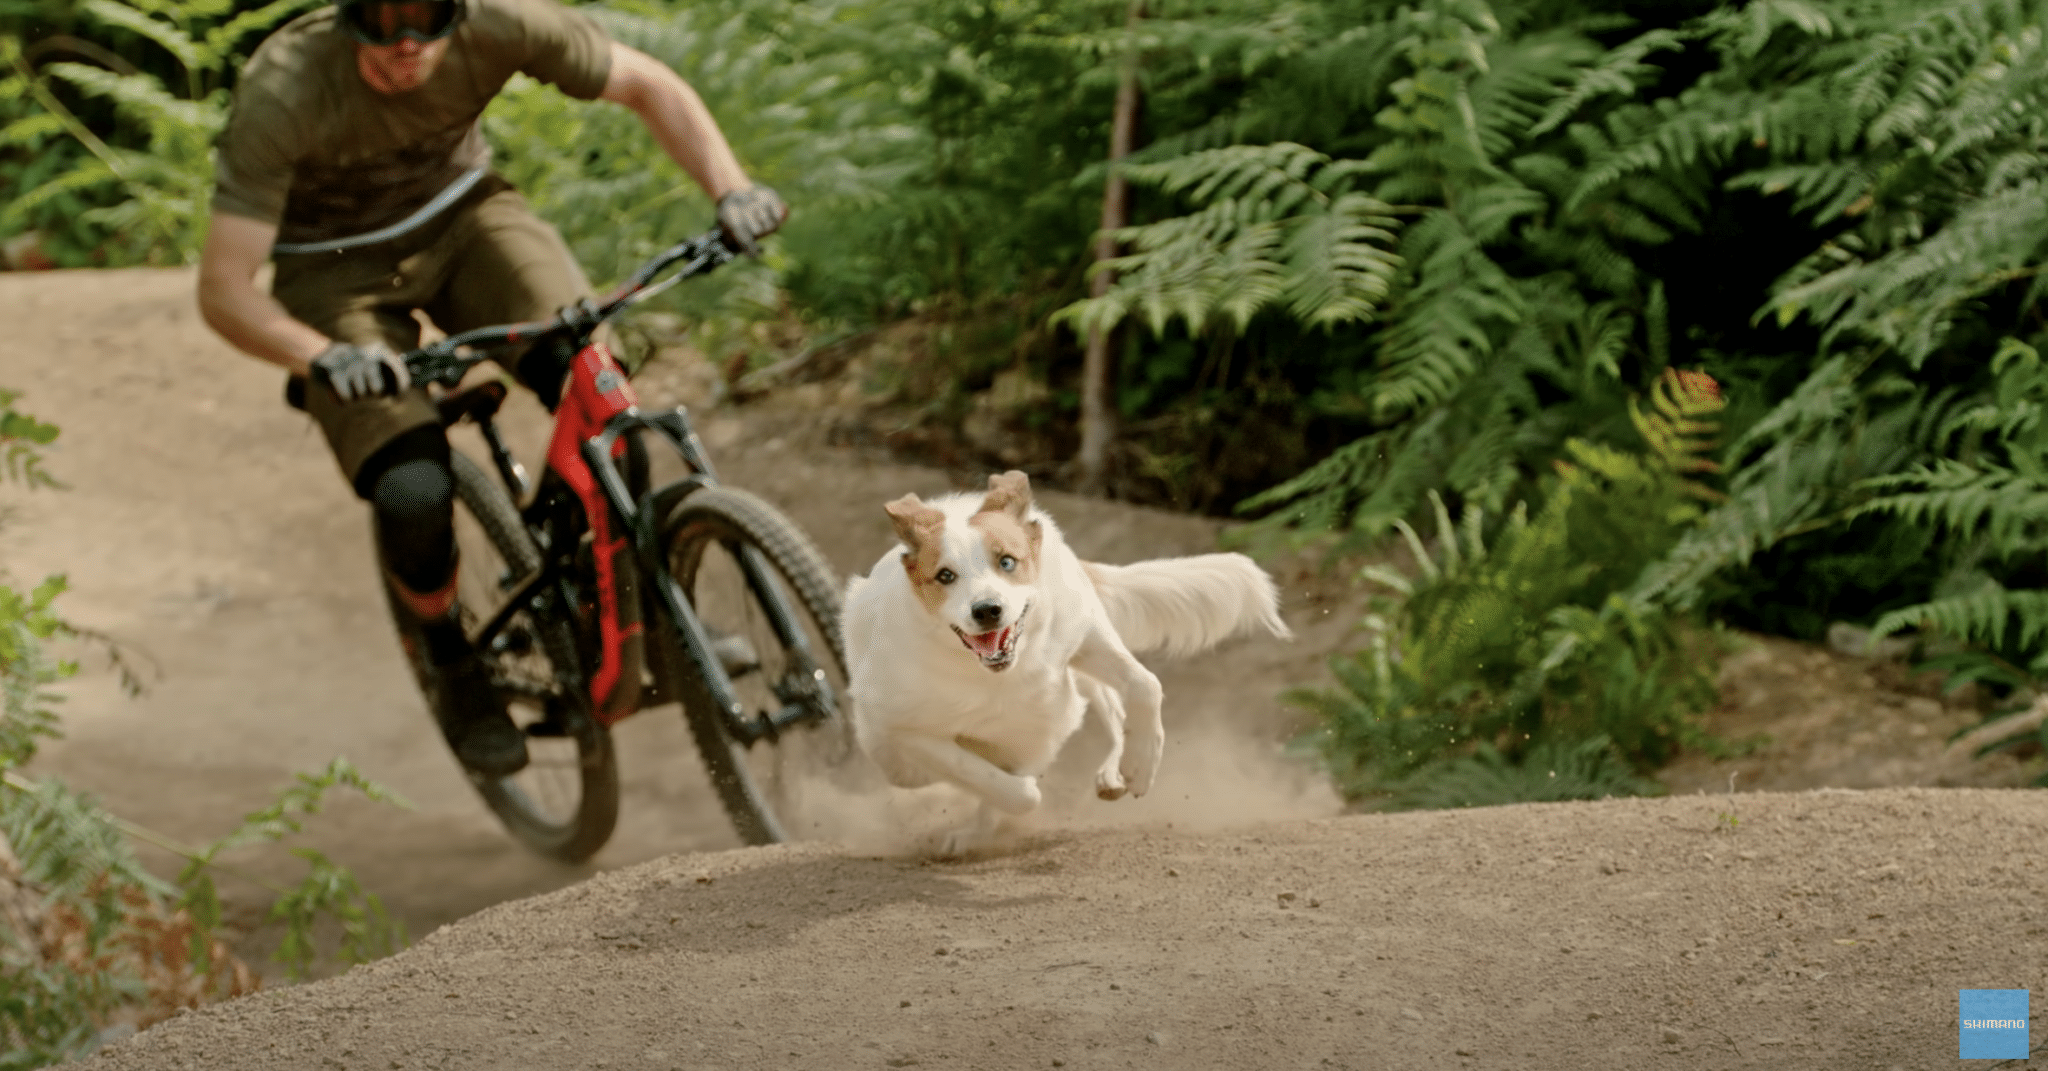 Hundeliebhaber und Trailenthusiasten: Shimano-Video begeistert E-Biker und Hundebesitzer